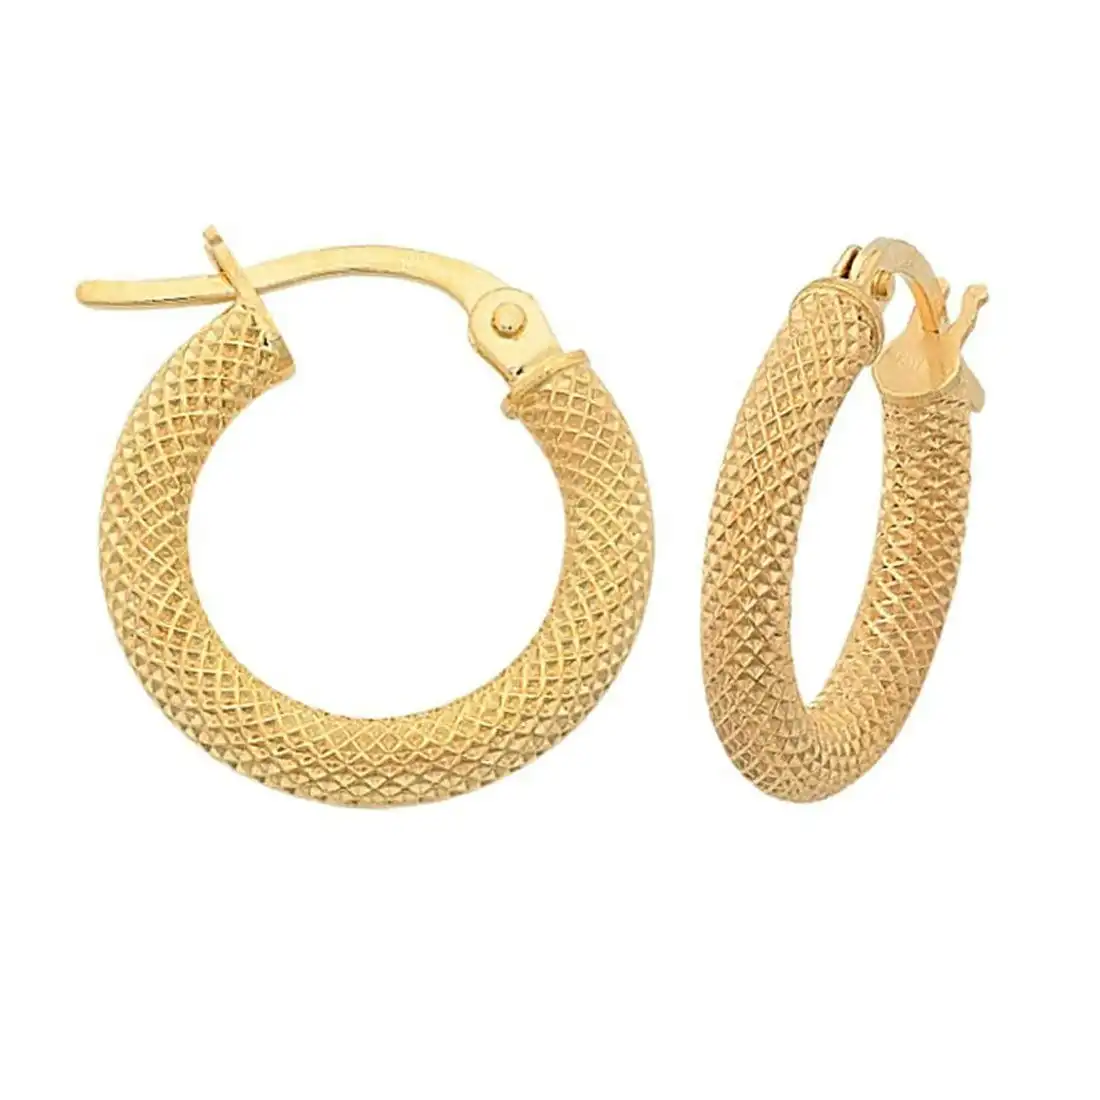 Fancy Mesh 10mm Hoop Earrings in 9ct Yellow Gold